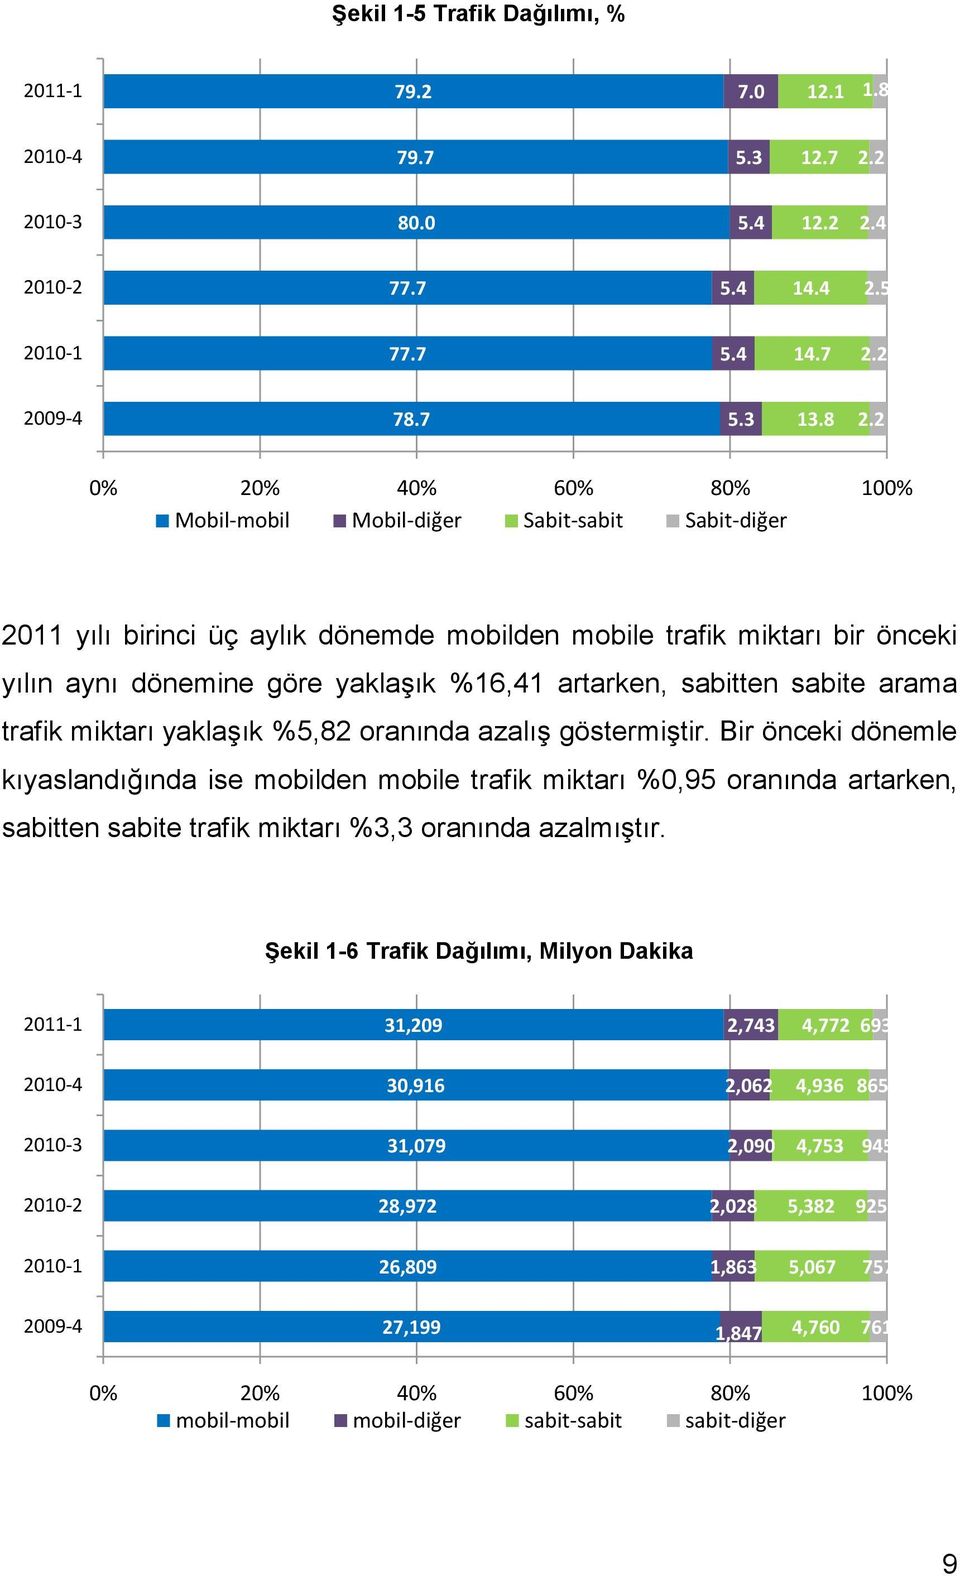 2 0% 20% 40% 60% 80% 100% Mobil-mobil Mobil-diğer Sabit-sabit Sabit-diğer 2011 yılı birinci üç aylık dönemde mobilden mobile trafik miktarı bir önceki yılın aynı dönemine göre yaklaşık %16,41